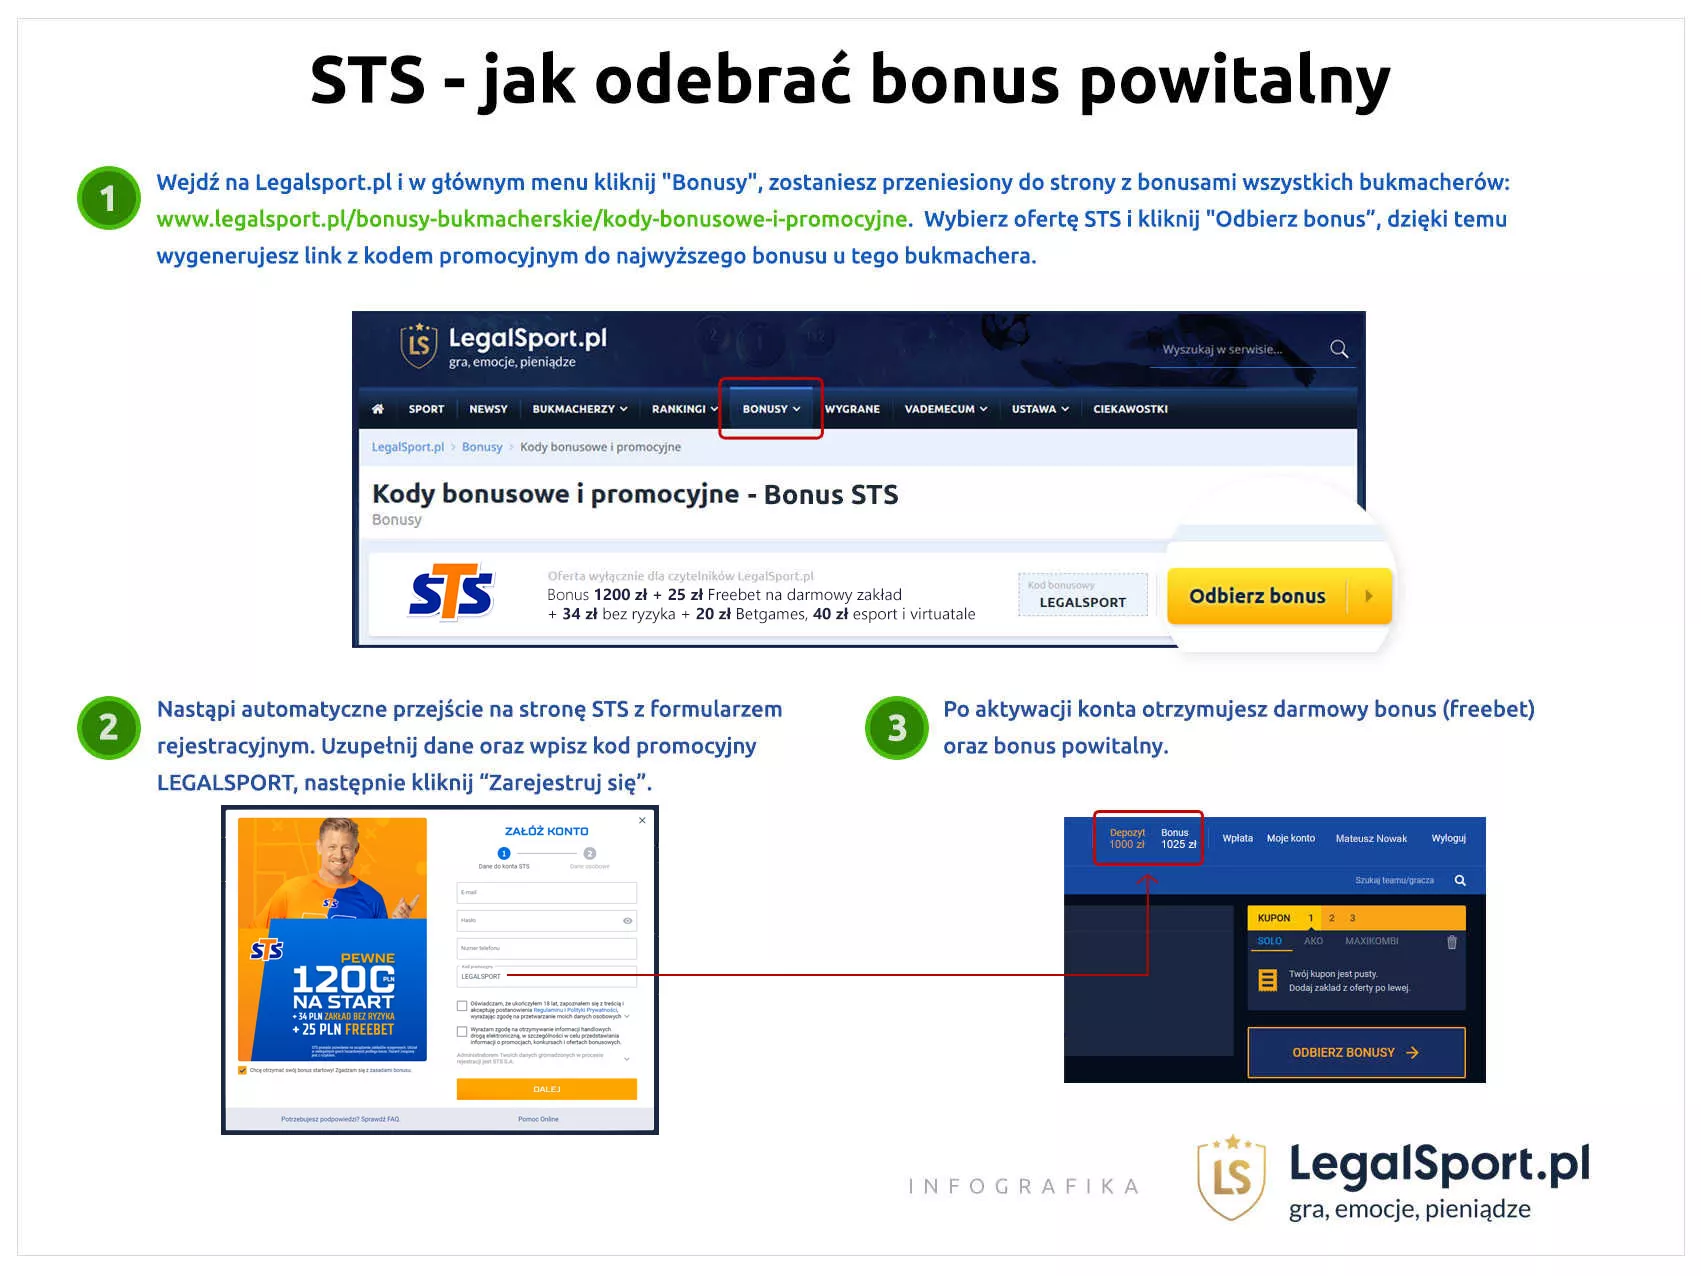 Jak odebrać najwyższy bonus po użyciu kodu na sts.pl